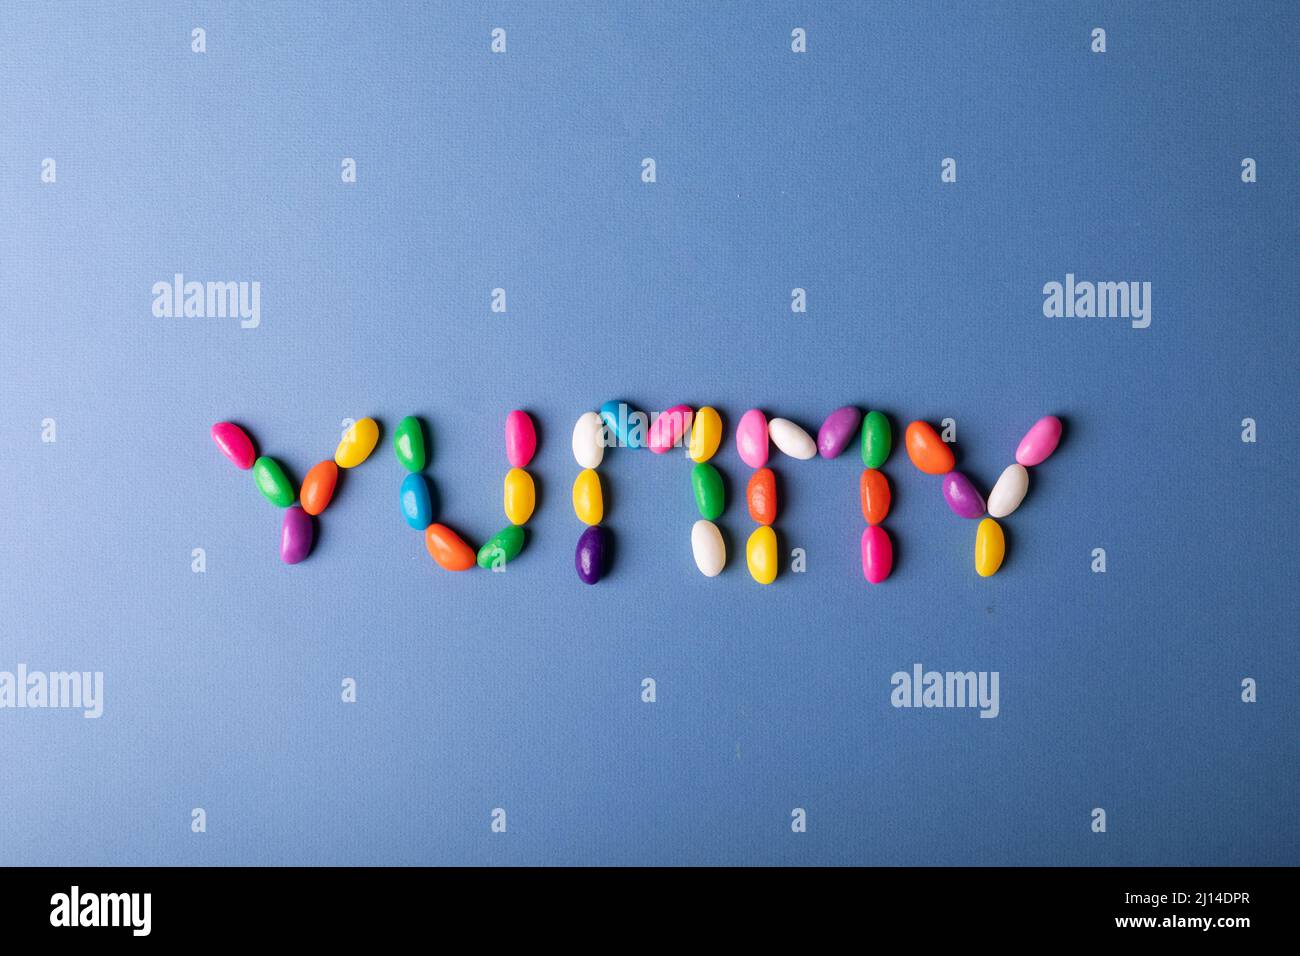 Vista aérea de caramelos de varios colores dispuestos como una palabra deliciosa sobre fondo azul con espacio de copia Foto de stock